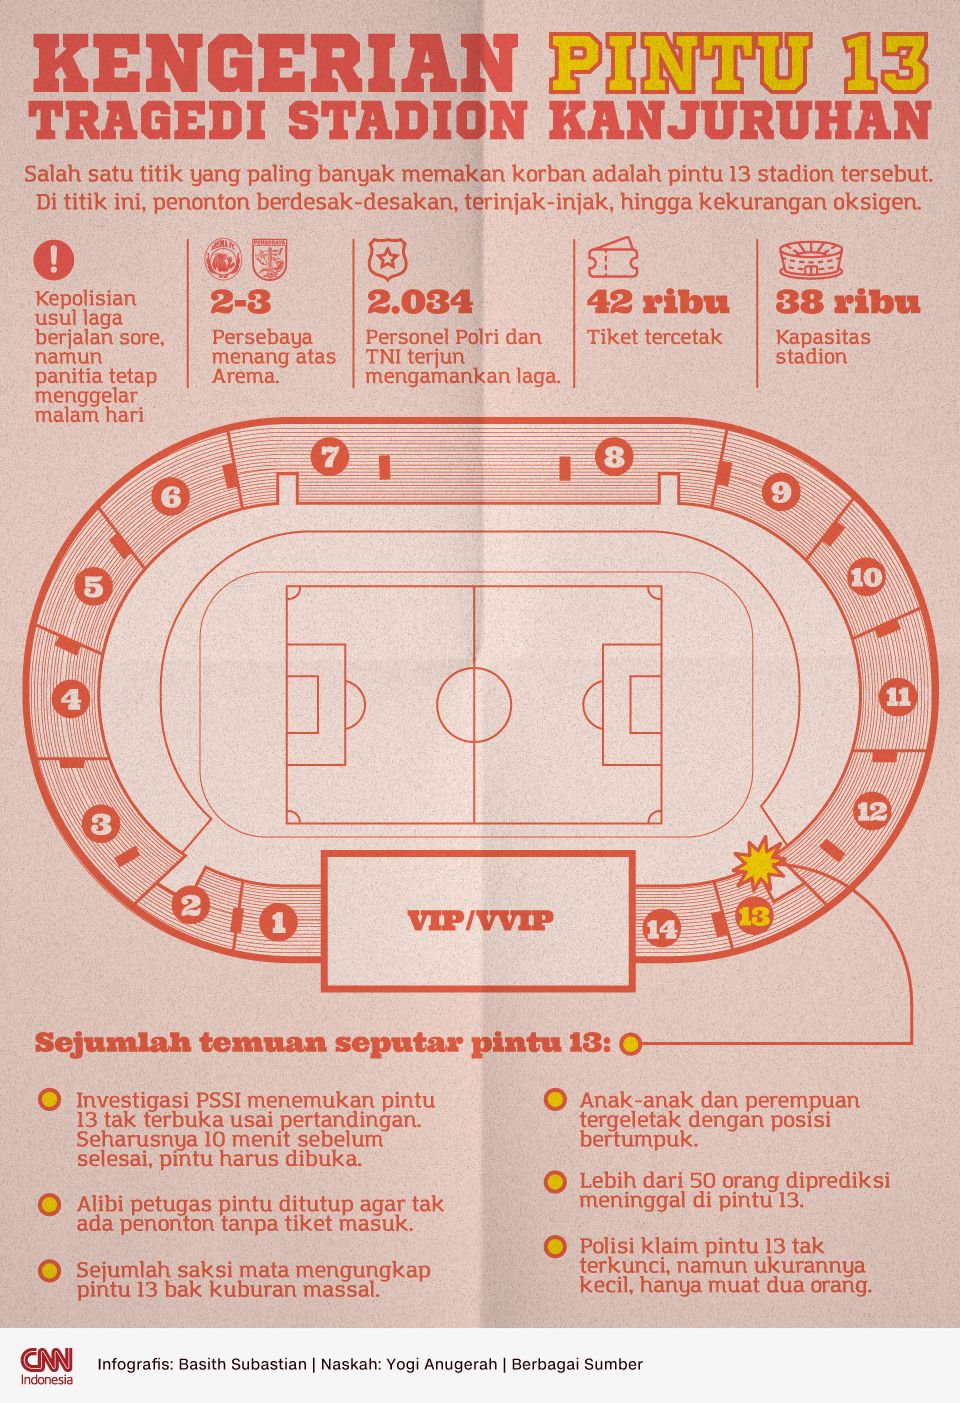 Infografis Kengerian Pintu 13 Tragedi Stadion Kanjuruhan